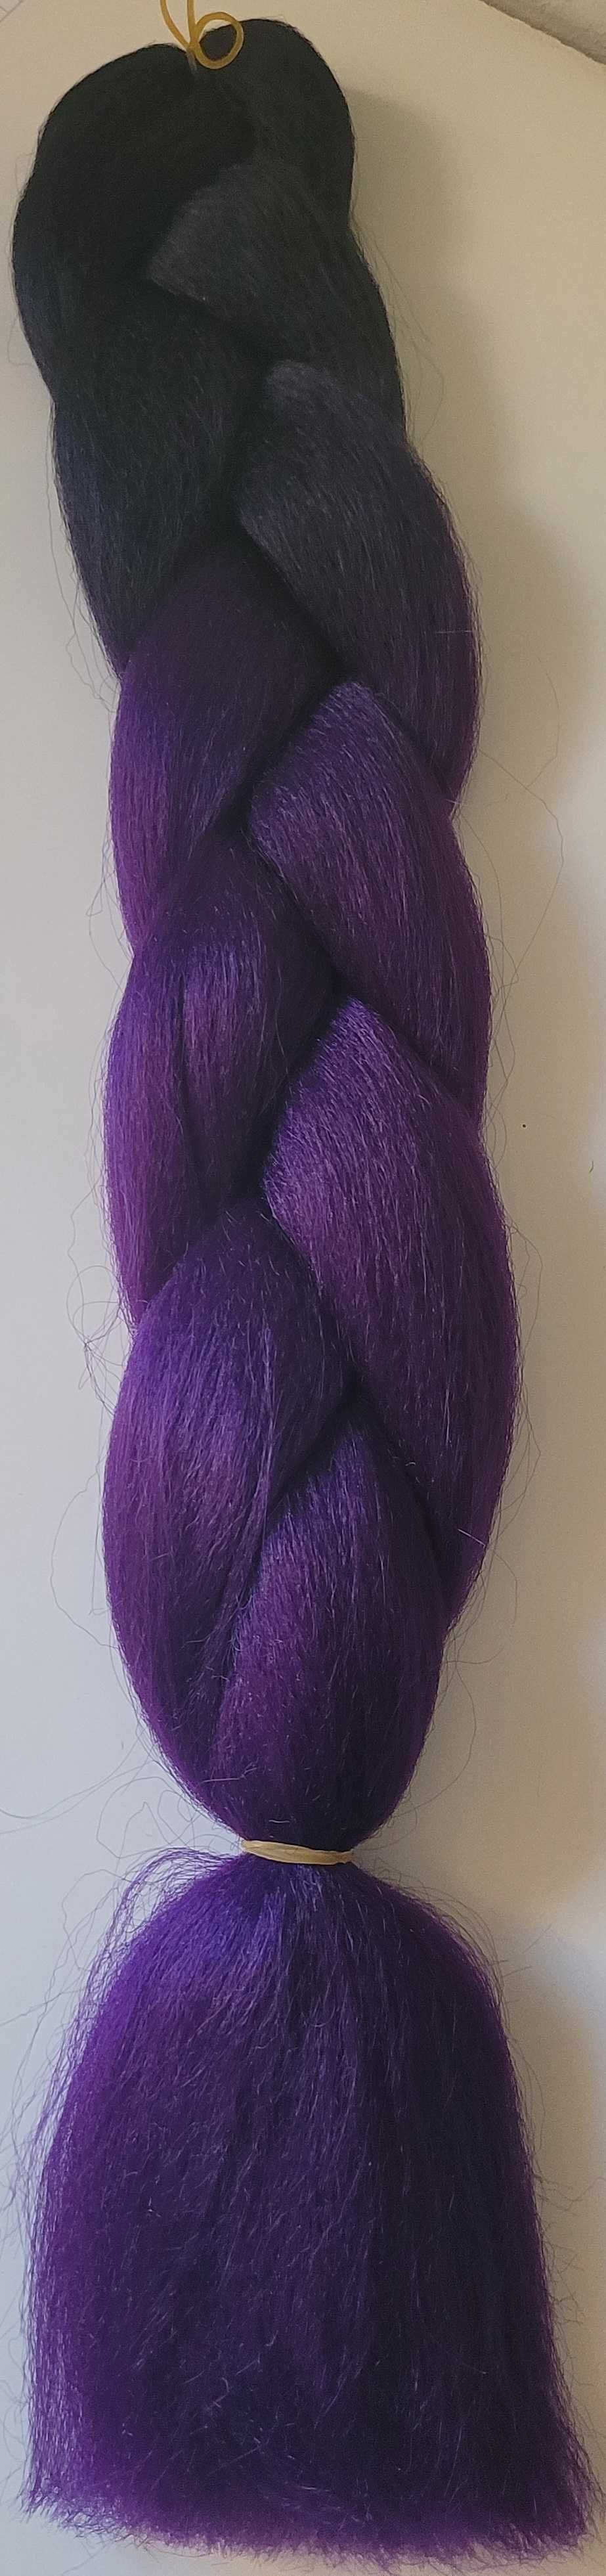 Włosy Syntetyczne kolorowe warkoczyki ombre fioletowo-czarne